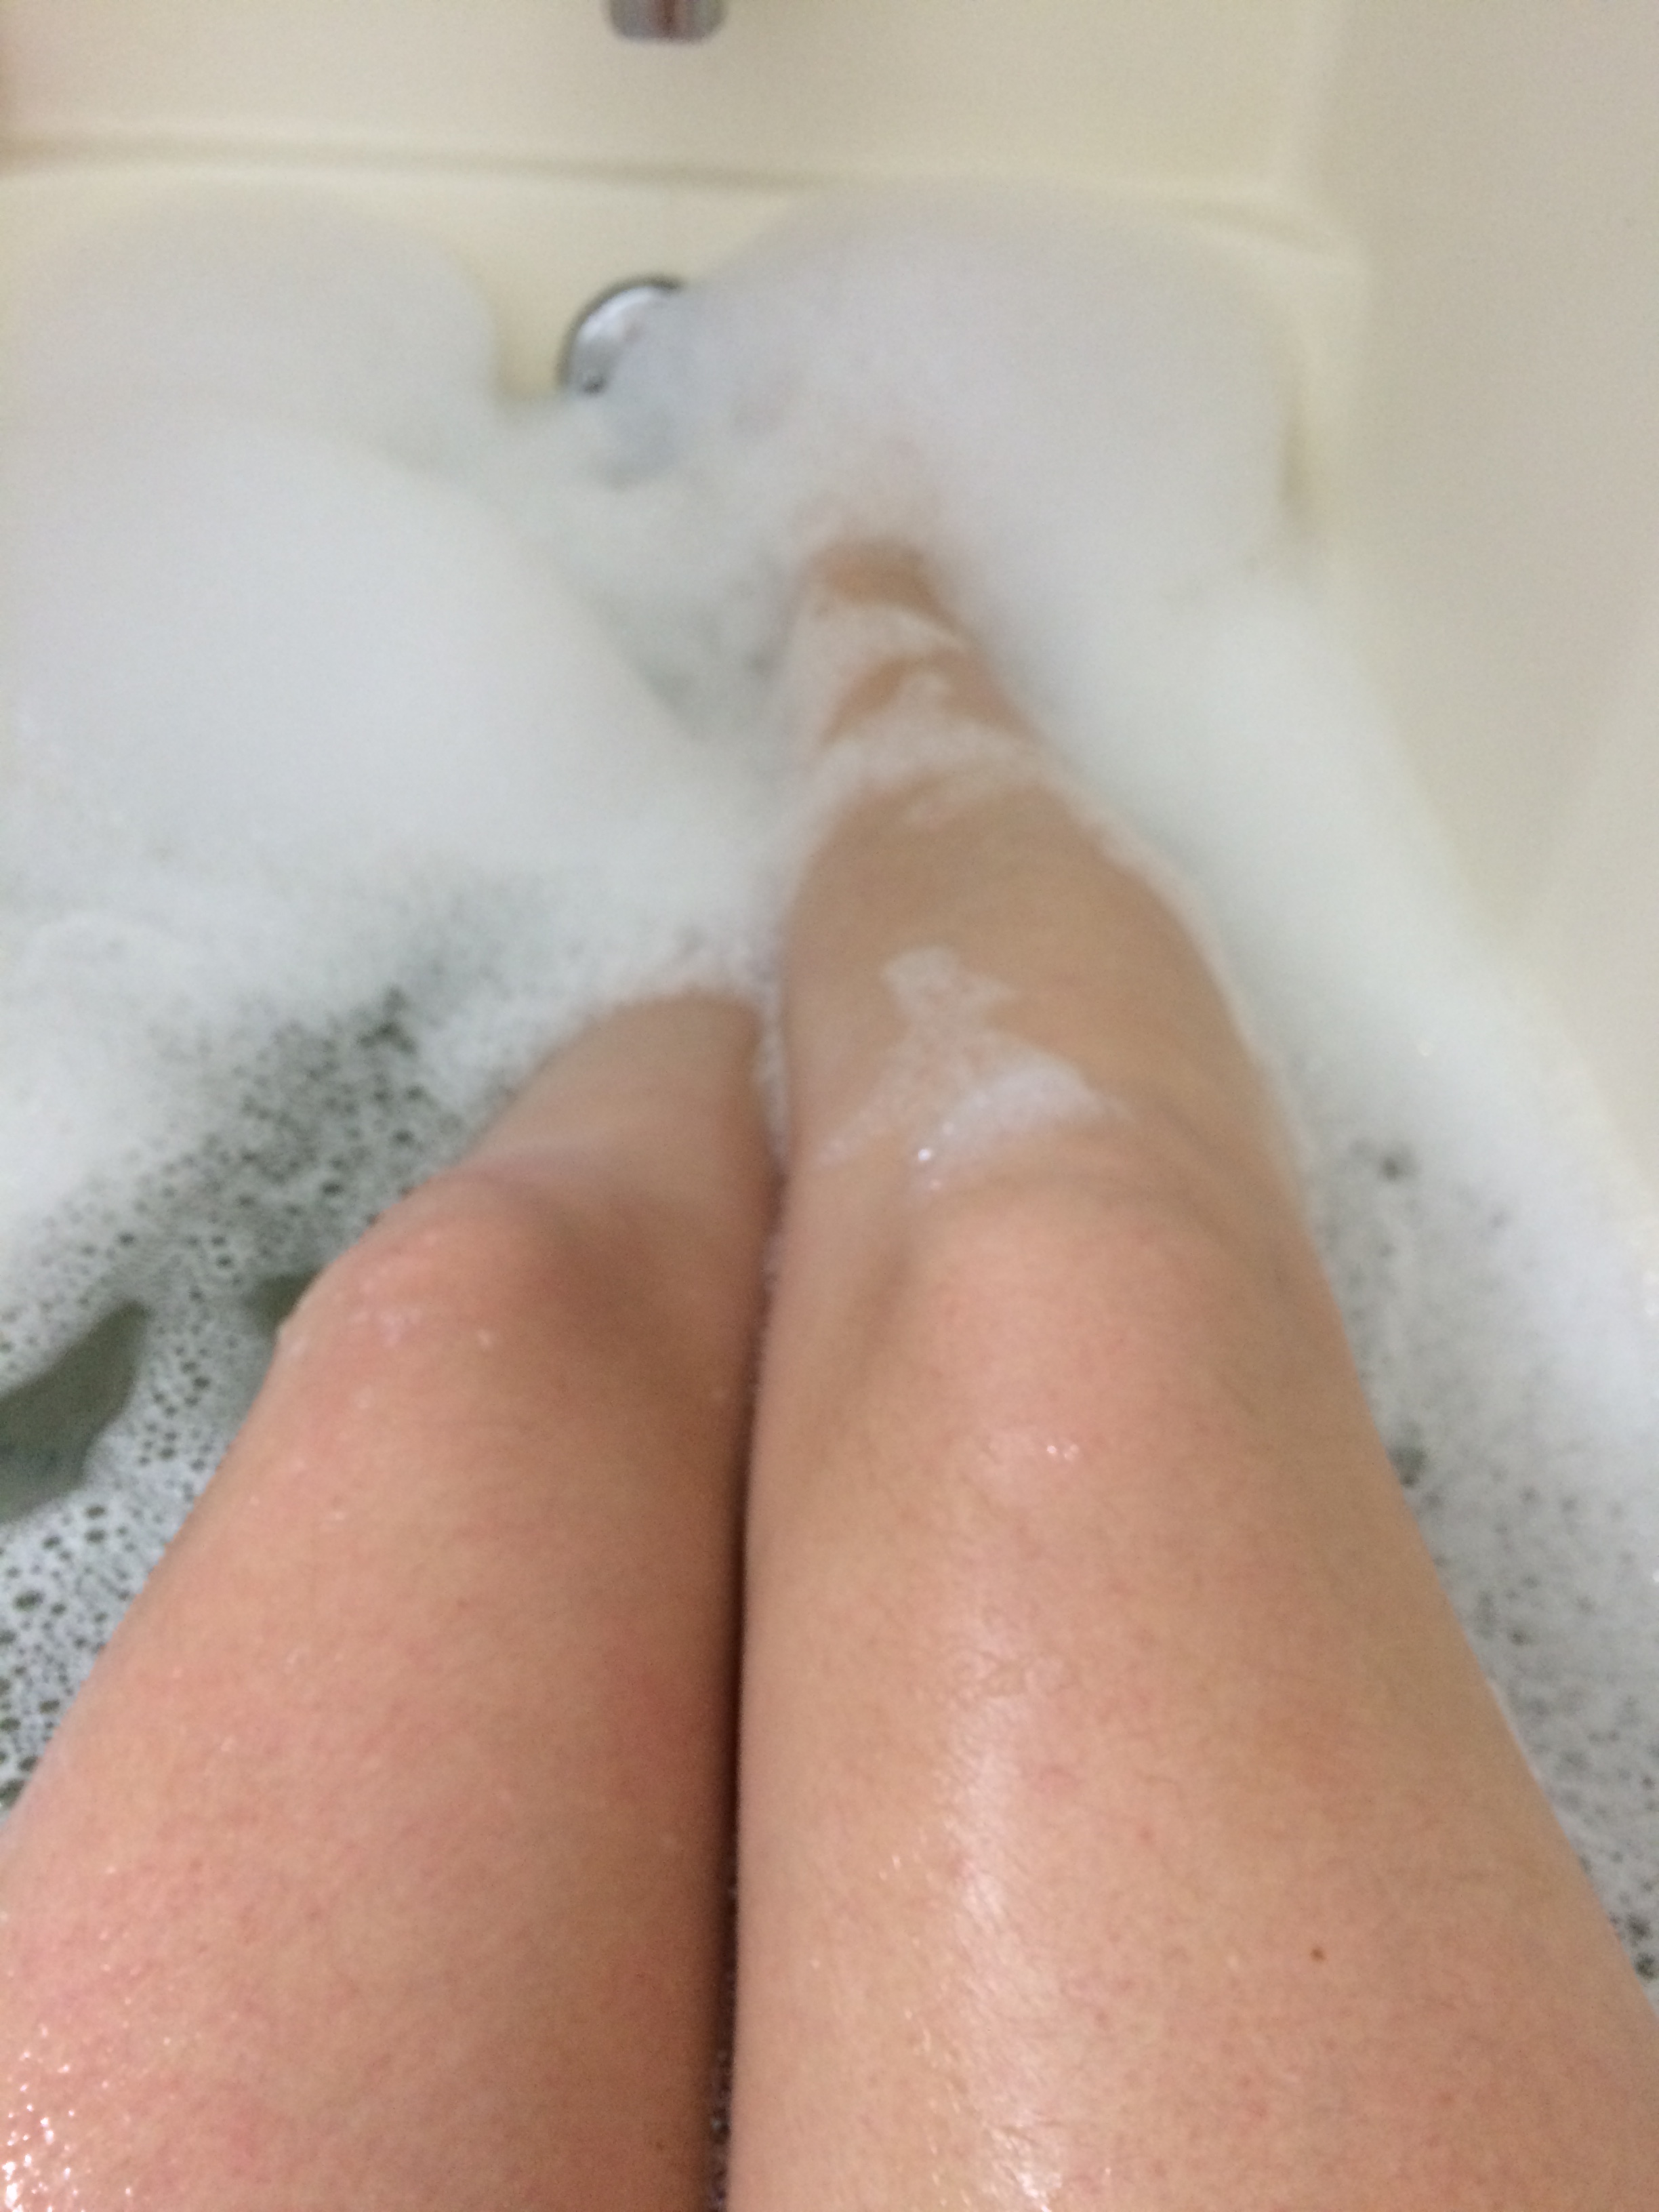 brandon thompkins add photo legs in bubble bath